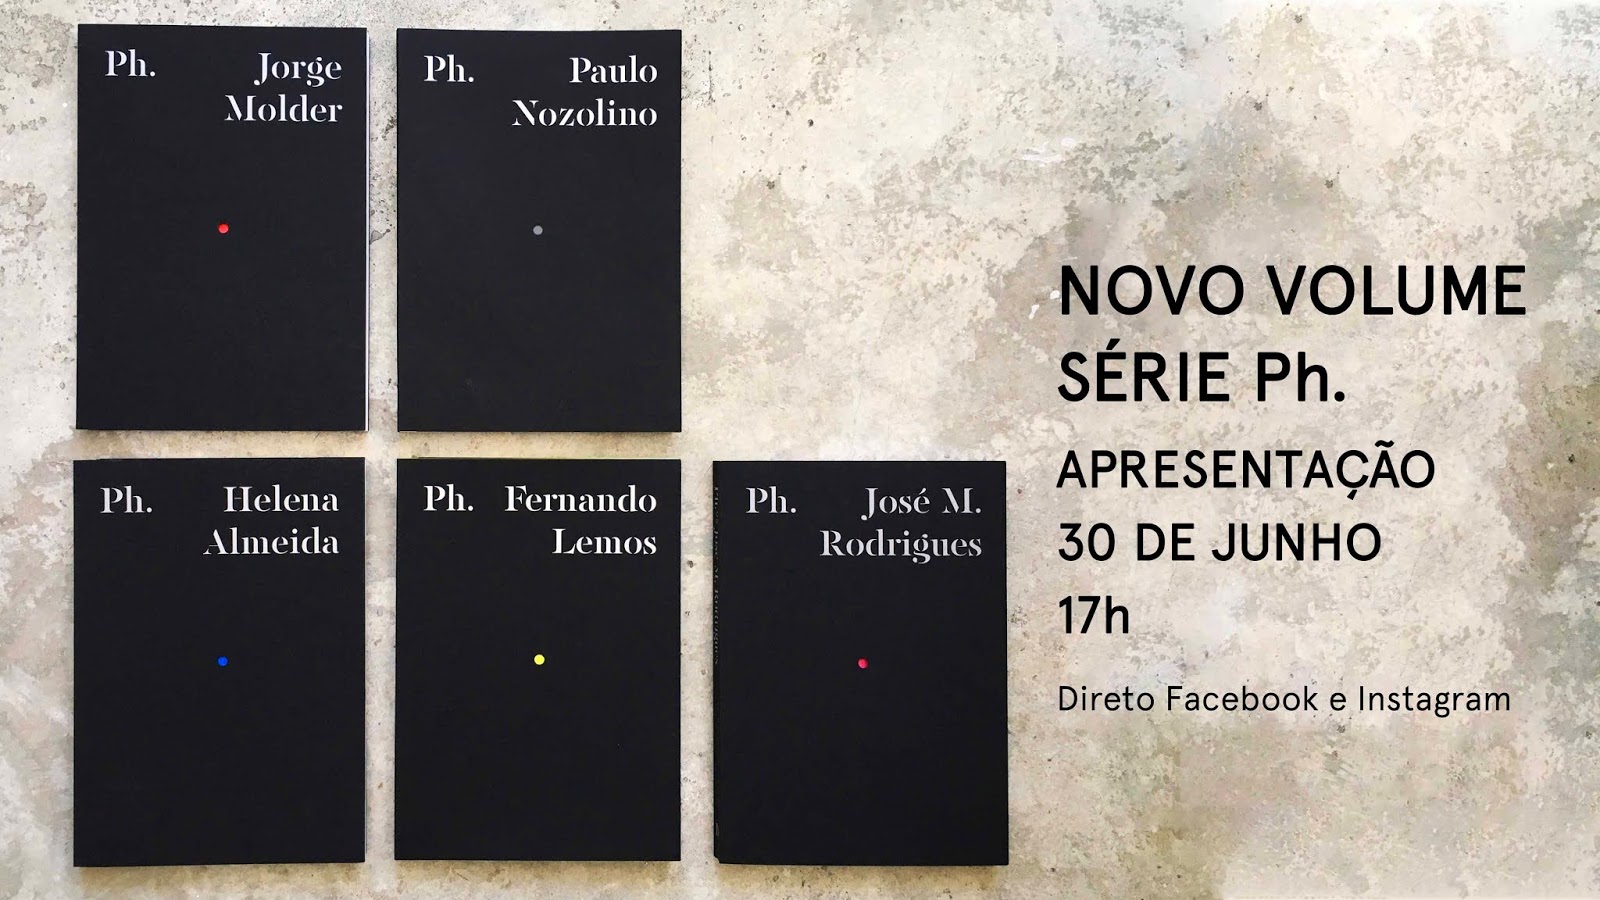 Imprensa Nacional lança novo livro da Série Ph. dedicado à obra de José M. Rodrigues